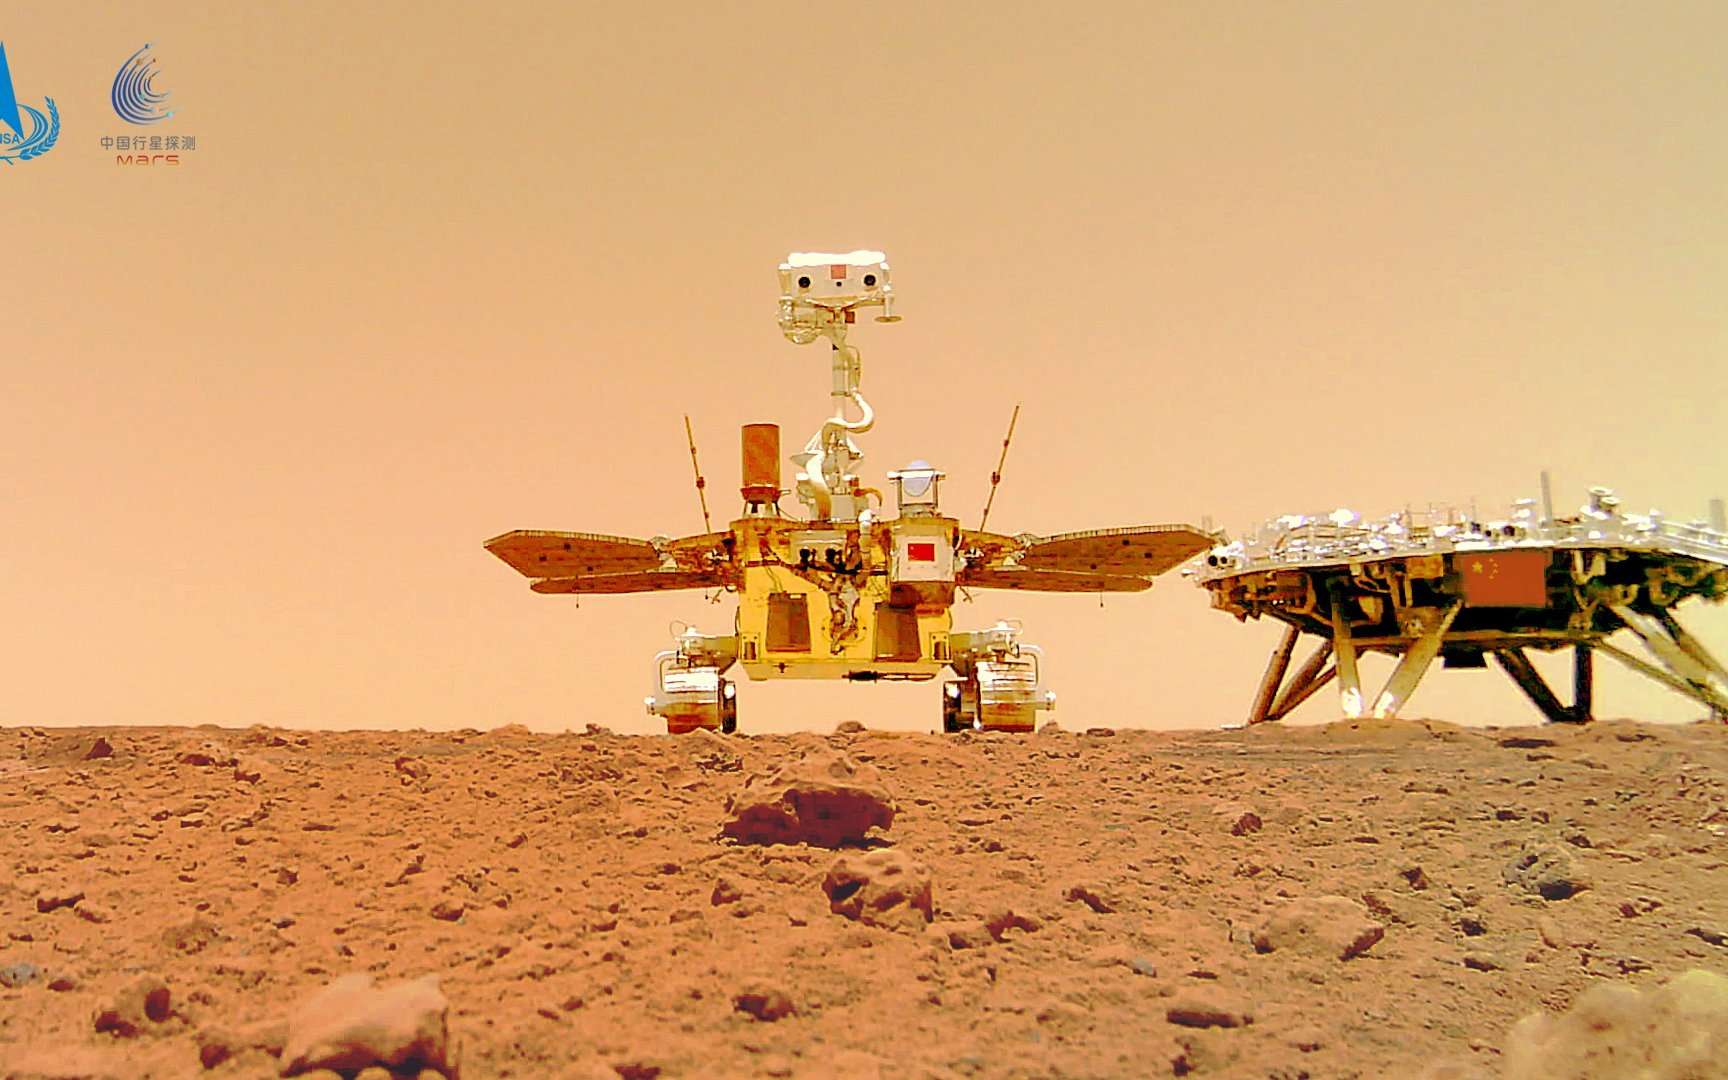 L'impressionnant selfie du rover Zhurong sur Mars